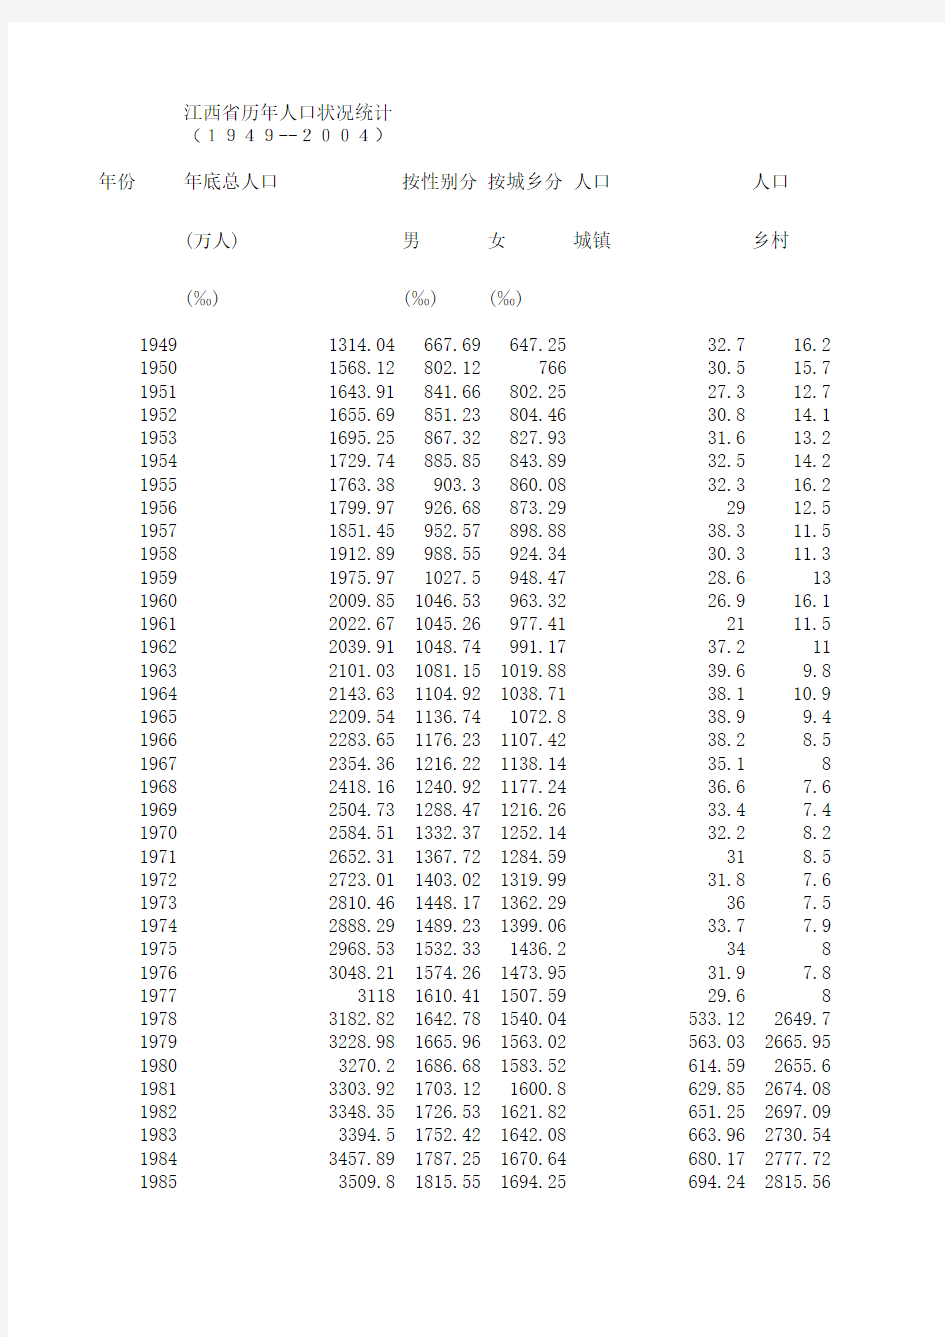 江西省历年人口状况统计 